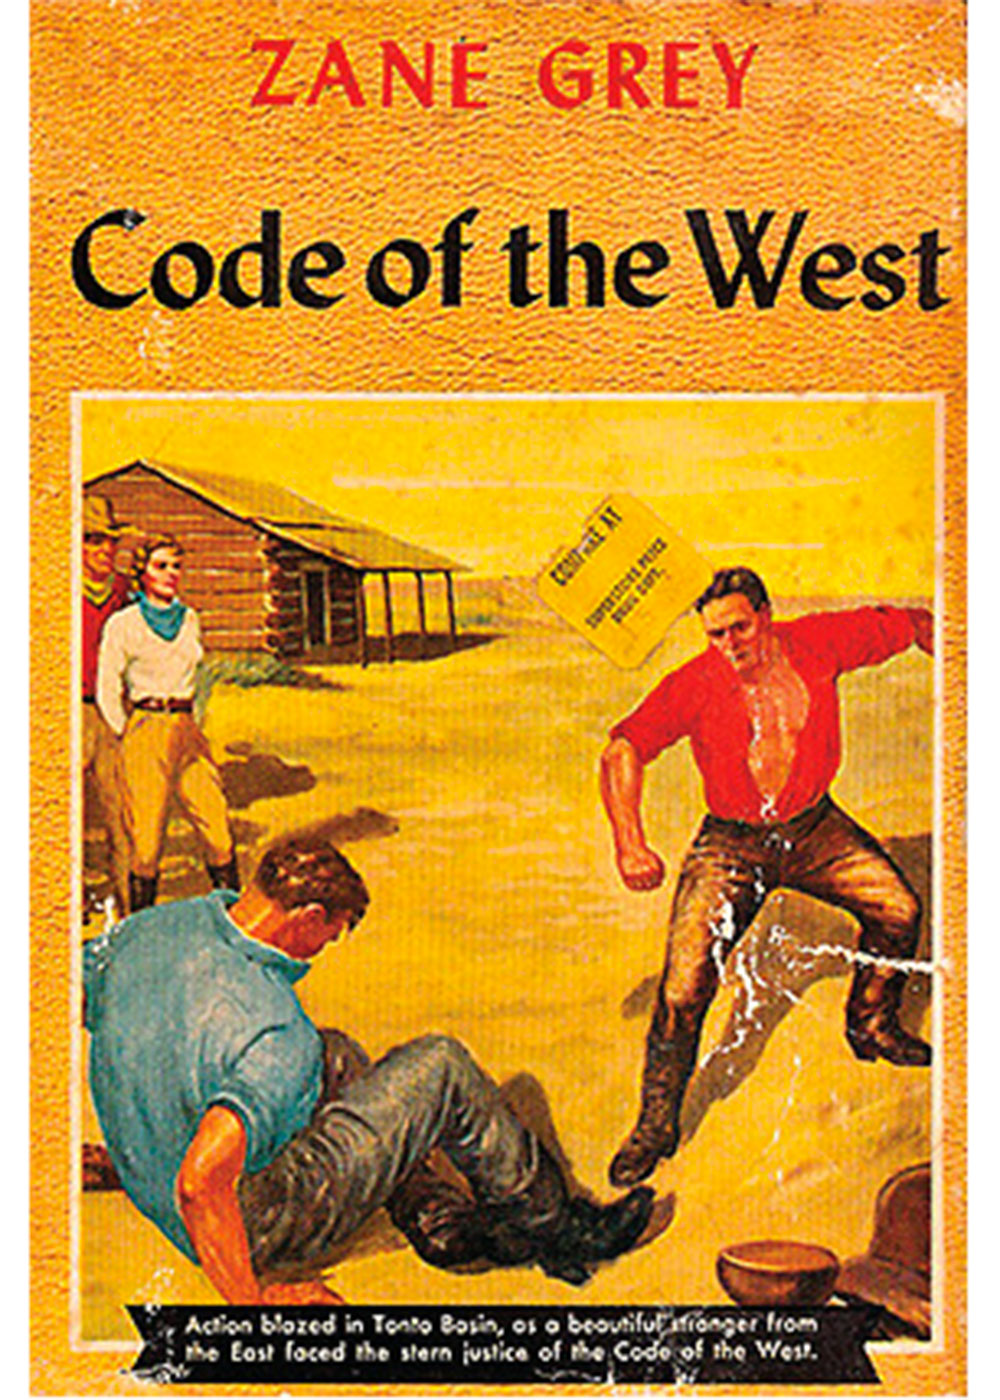 code of the west zane grey true west magazine